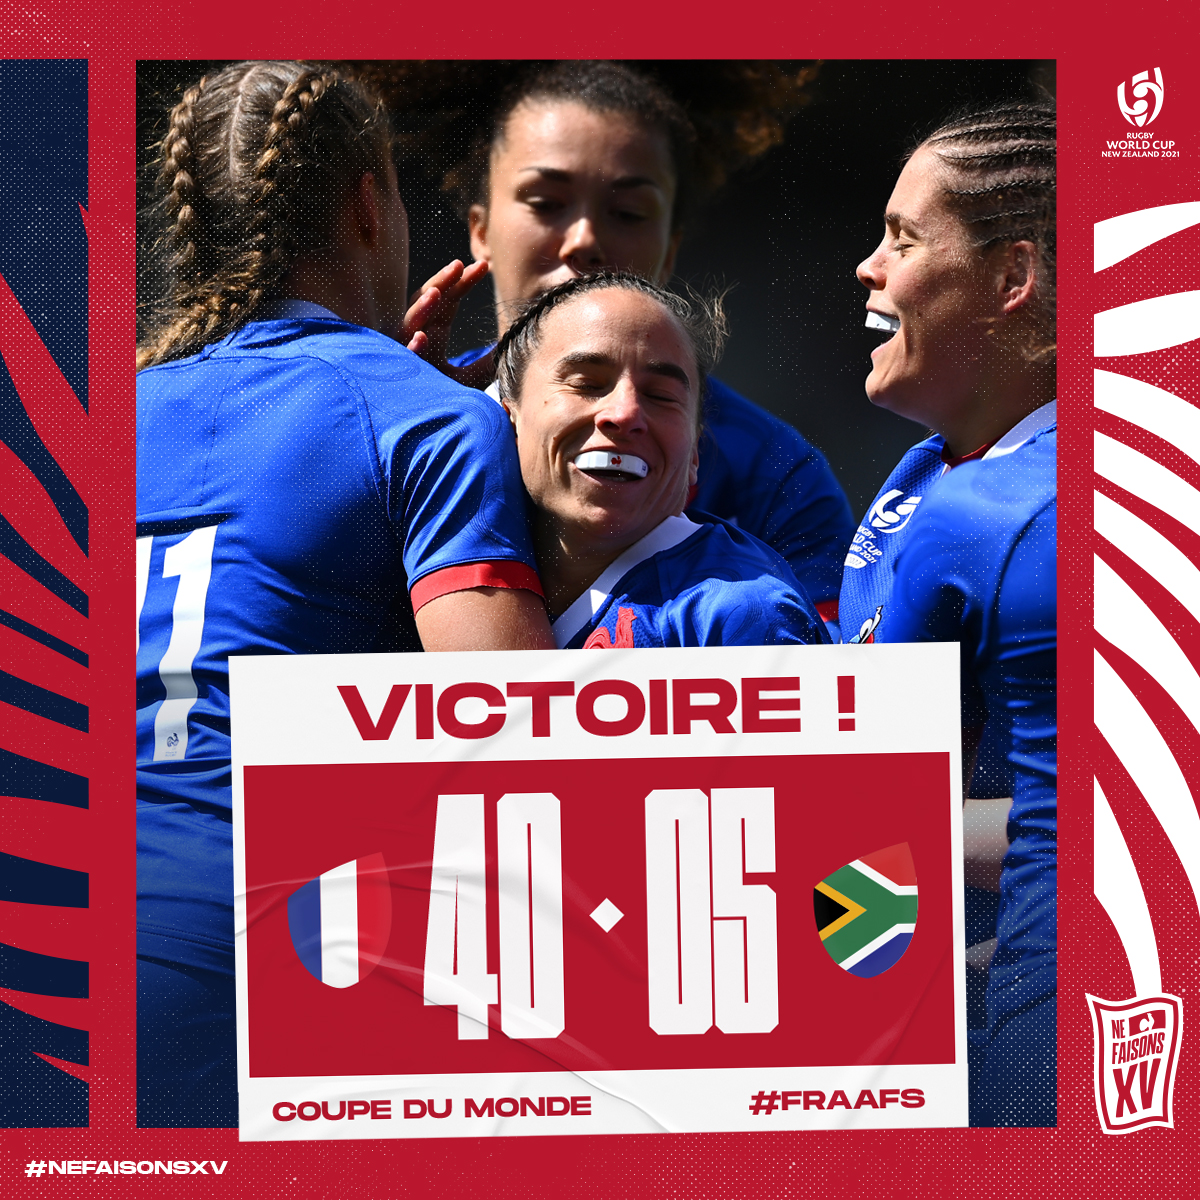 🇫🇷🇿🇦 𝐔𝐍𝐄 𝐁𝐄𝐋𝐋𝐄 𝐄𝐍𝐓𝐑𝐄́𝐄 𝐄𝐍 𝐌𝐀𝐓𝐈𝐄̀𝐑𝐄 ! Les Bleues s'imposent dans ce match d'ouverture de la Coupe du Monde ! Bravo les filles ! 👏 #FRAAFS #XVdeFrance #NeFaisonsXV #RWC2021